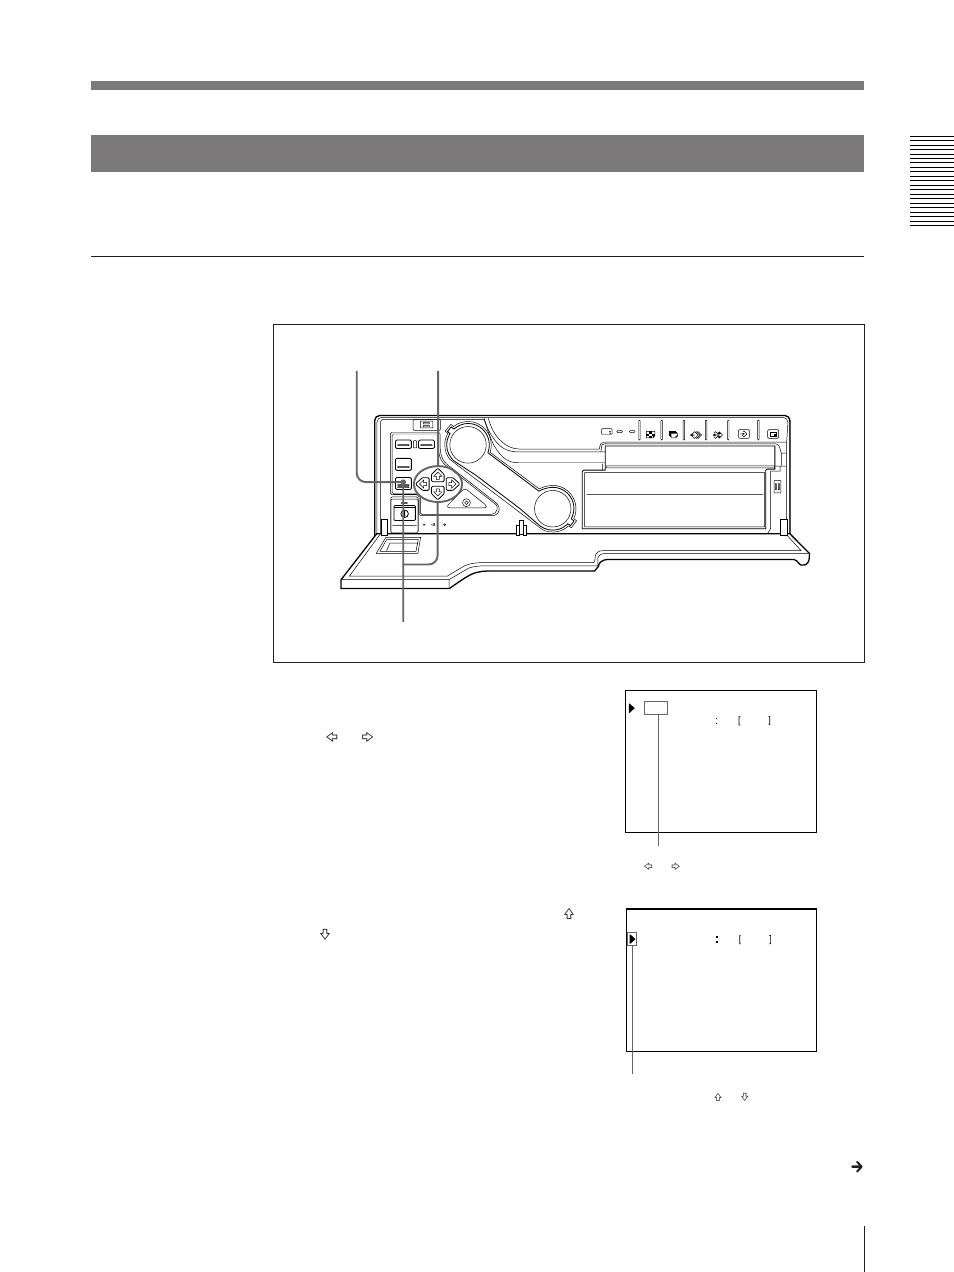 Adjusting the printout color, Adjusting the sharpness | Sony UP-2100 Manuel d'utilisation | Page 59 / 180